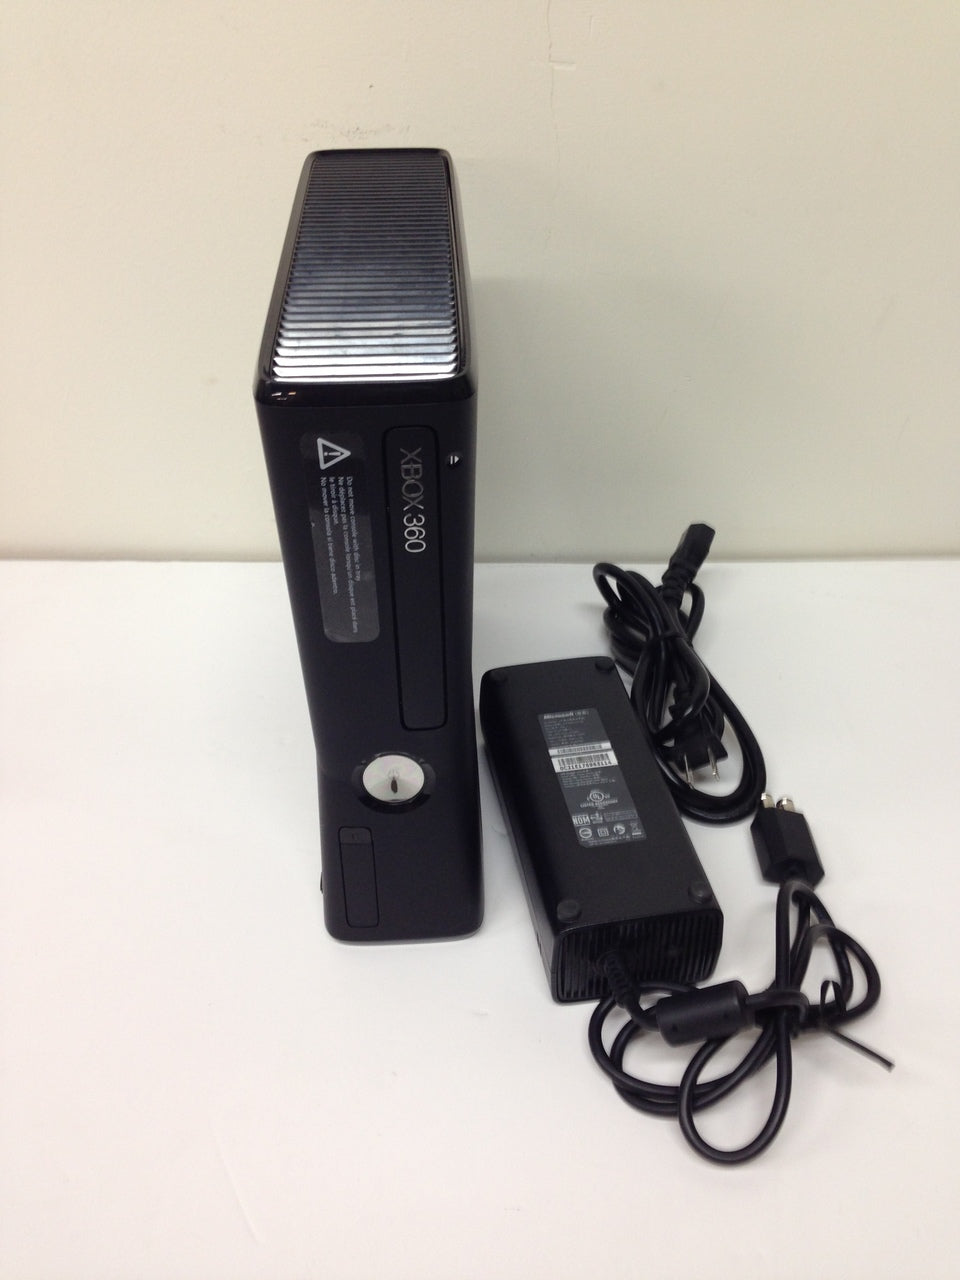 Microsoft Xbox 360 S Slim 250GB Model 1439 Video Game Console Black